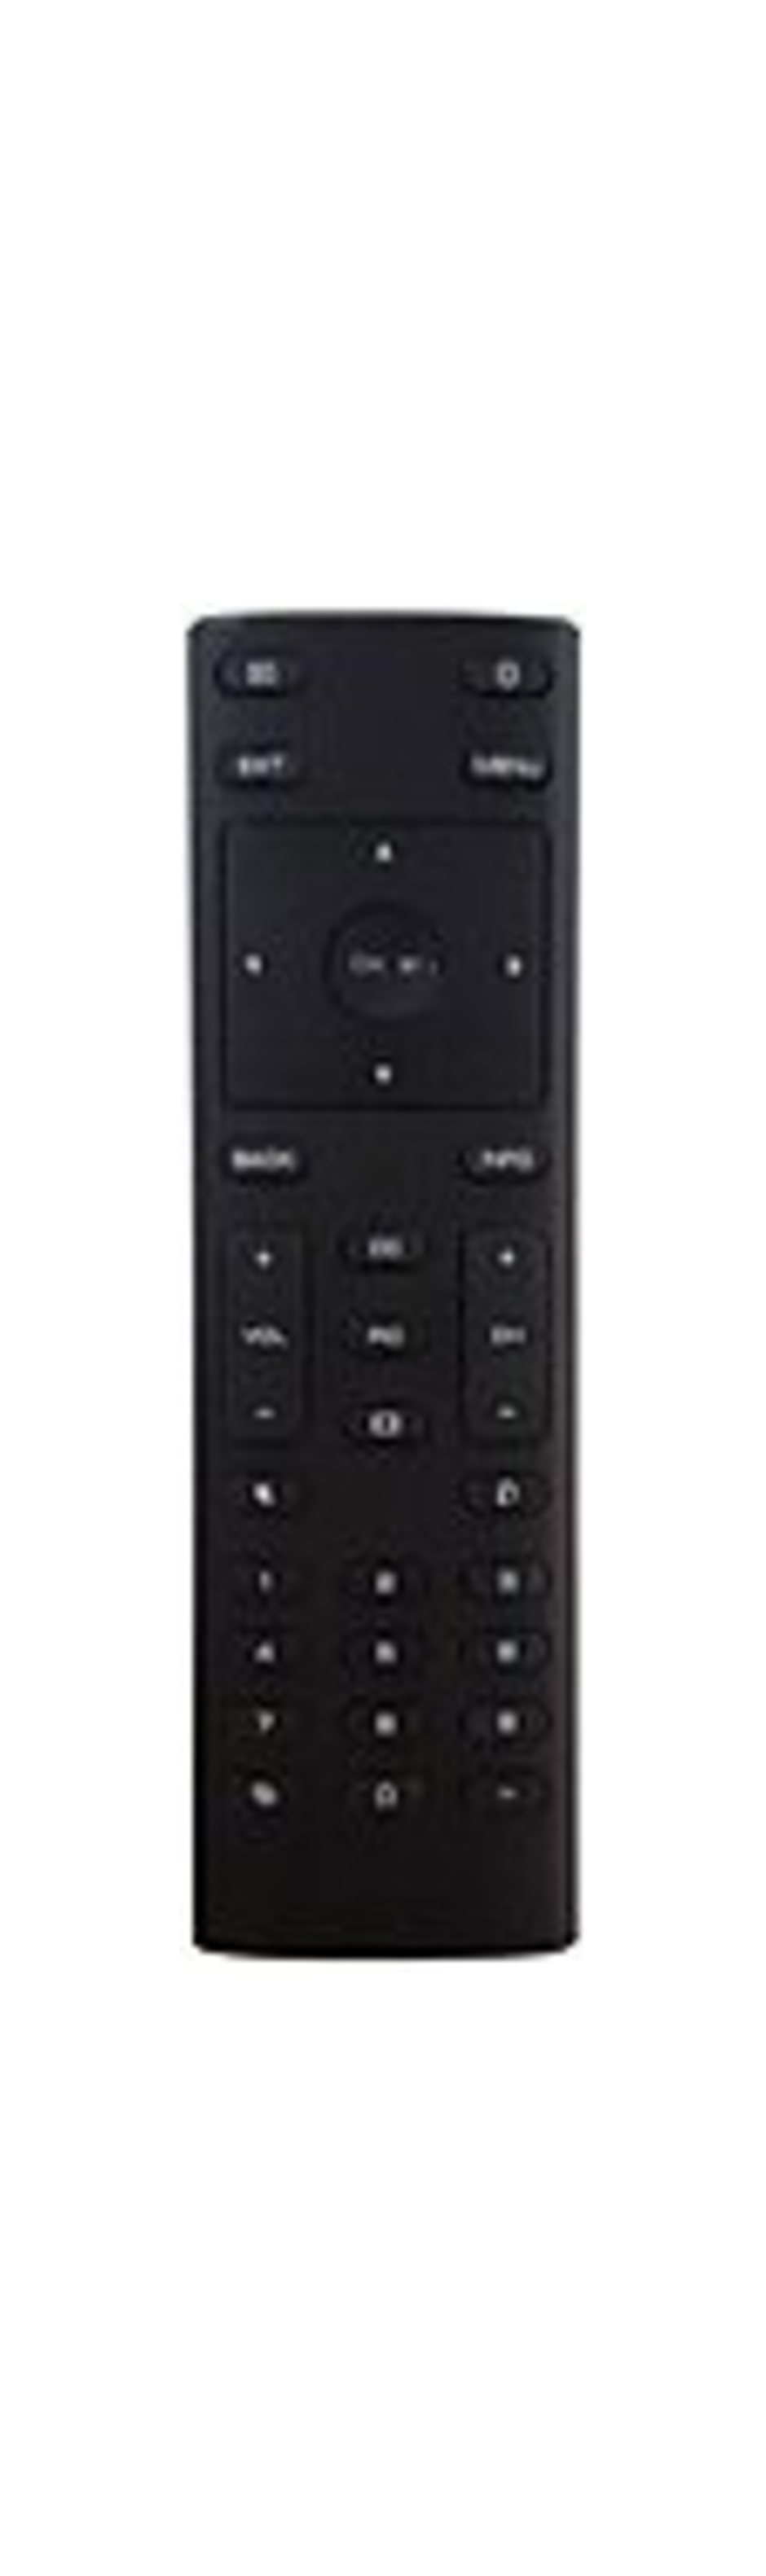 Vizio XRT135 HD TV Remote Control - Black